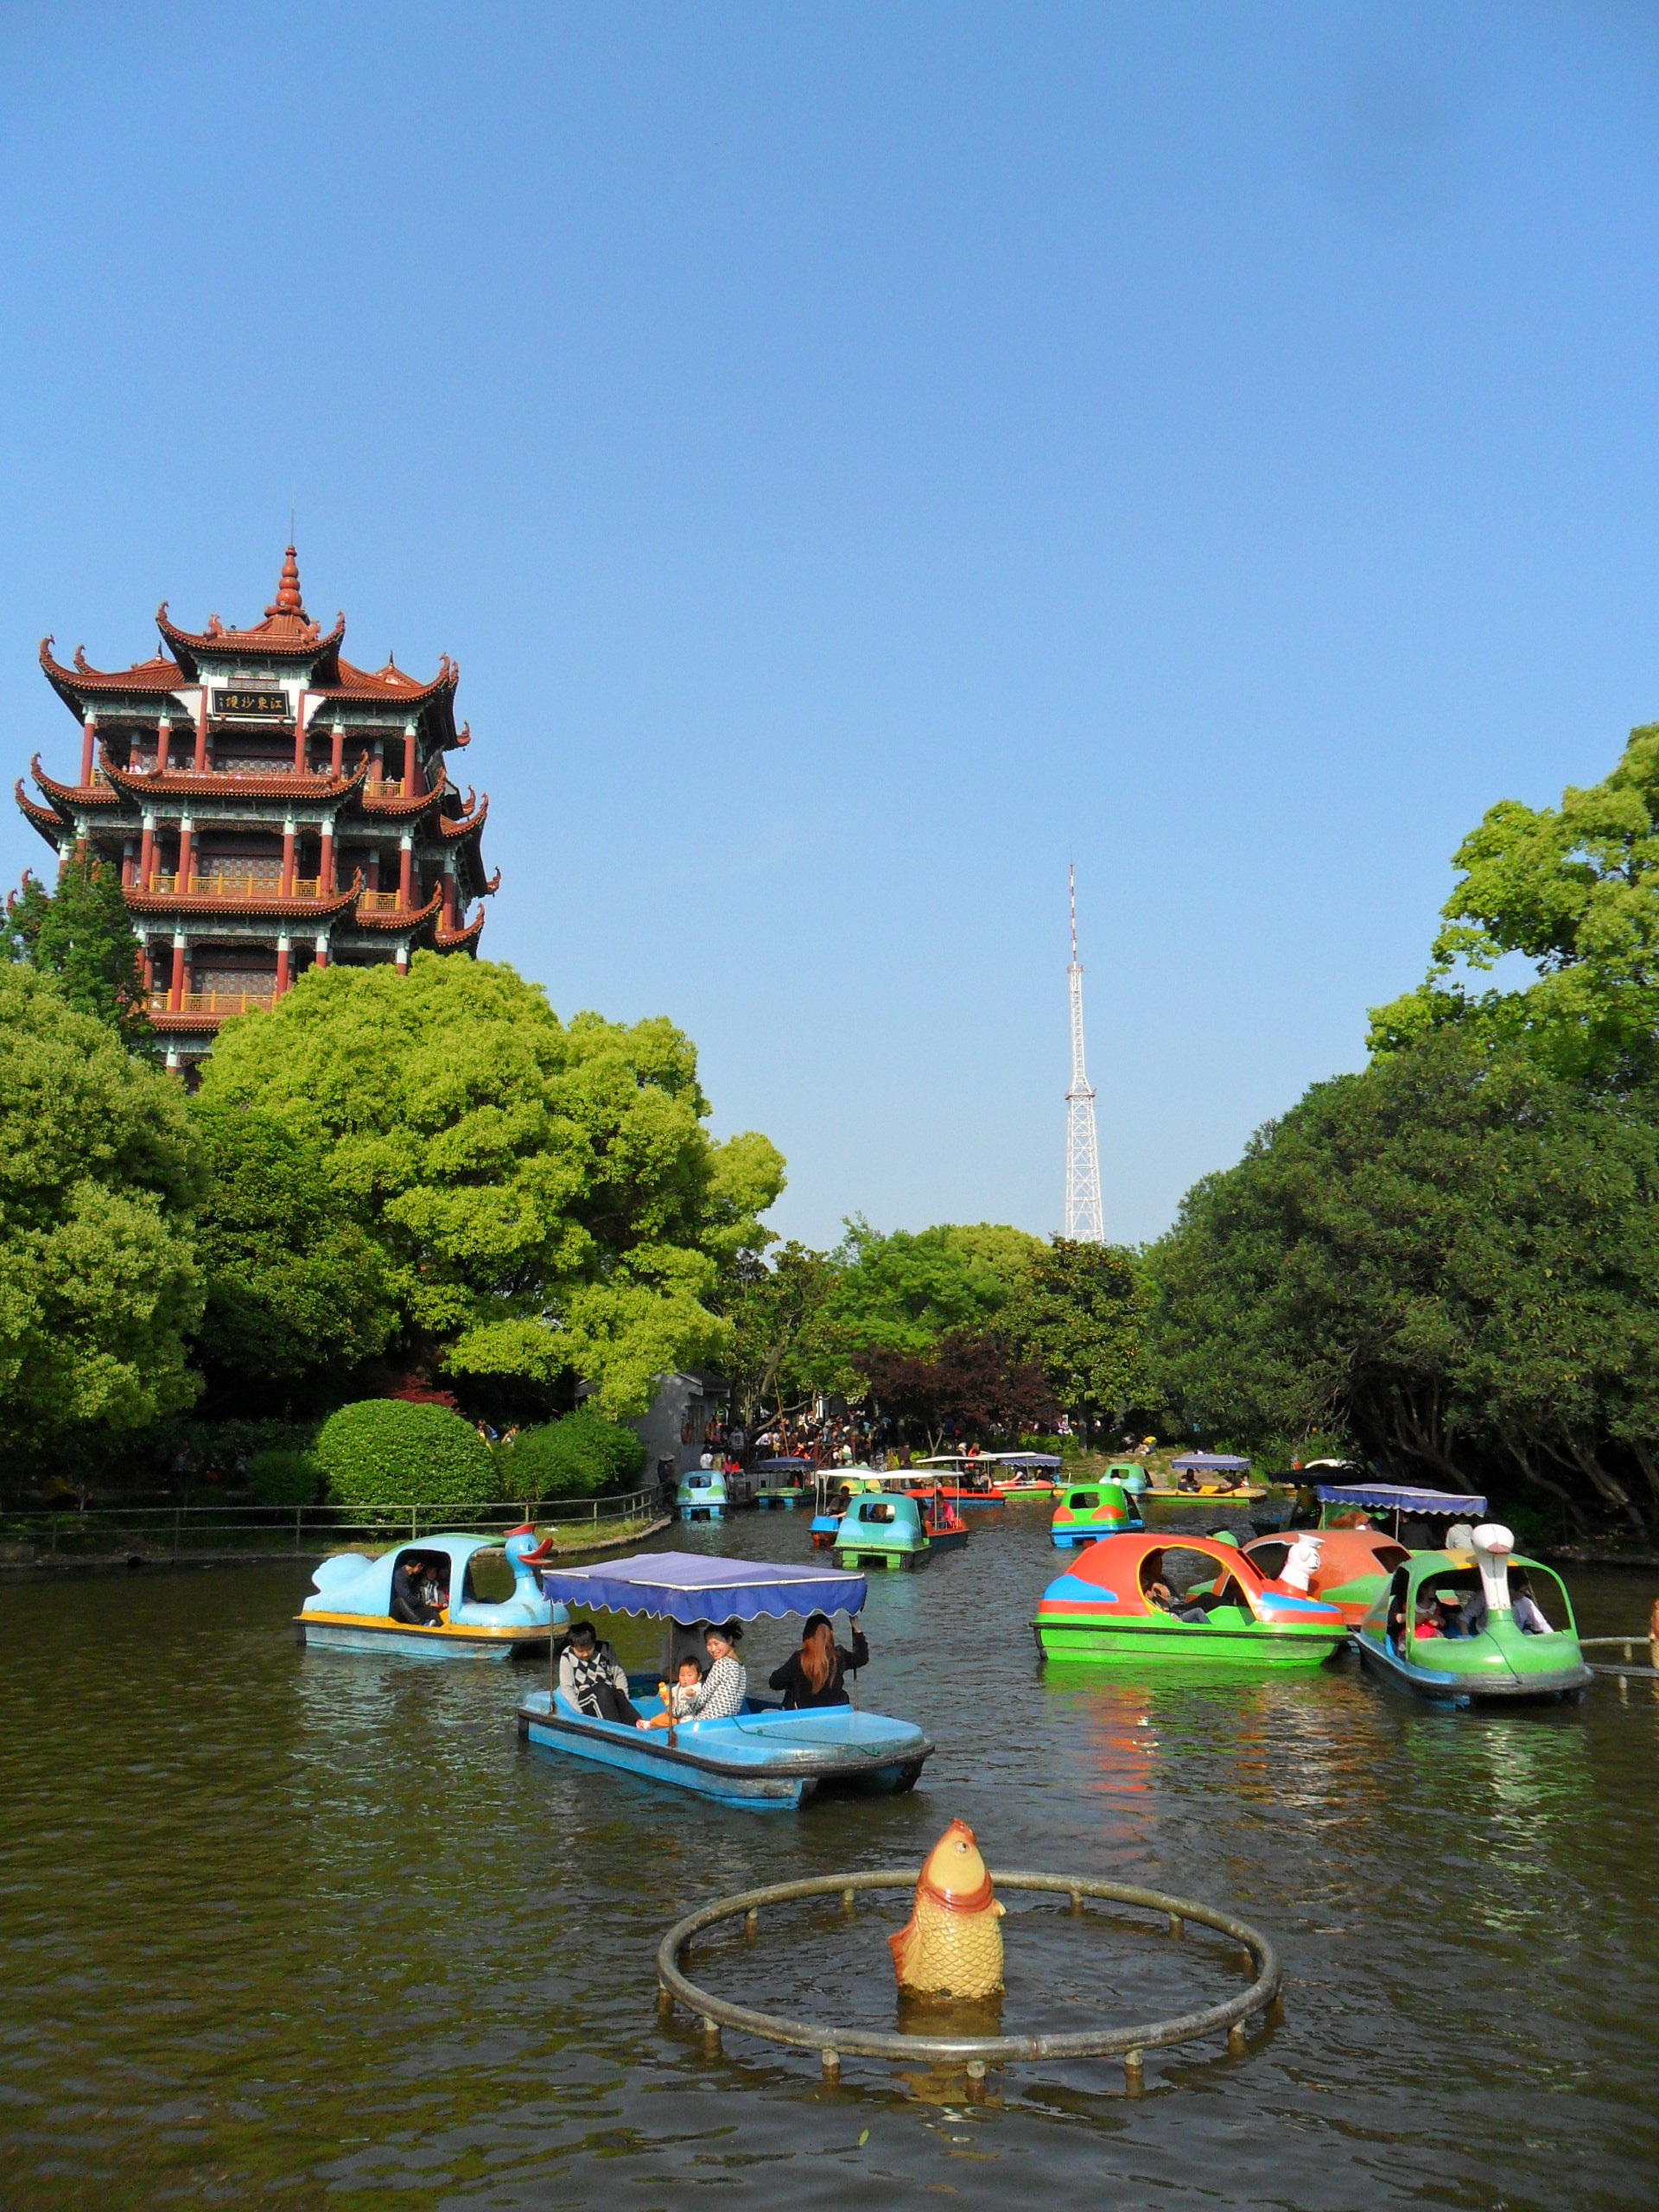 【携程攻略】上海川沙公园景点,川沙古城上的一座免费